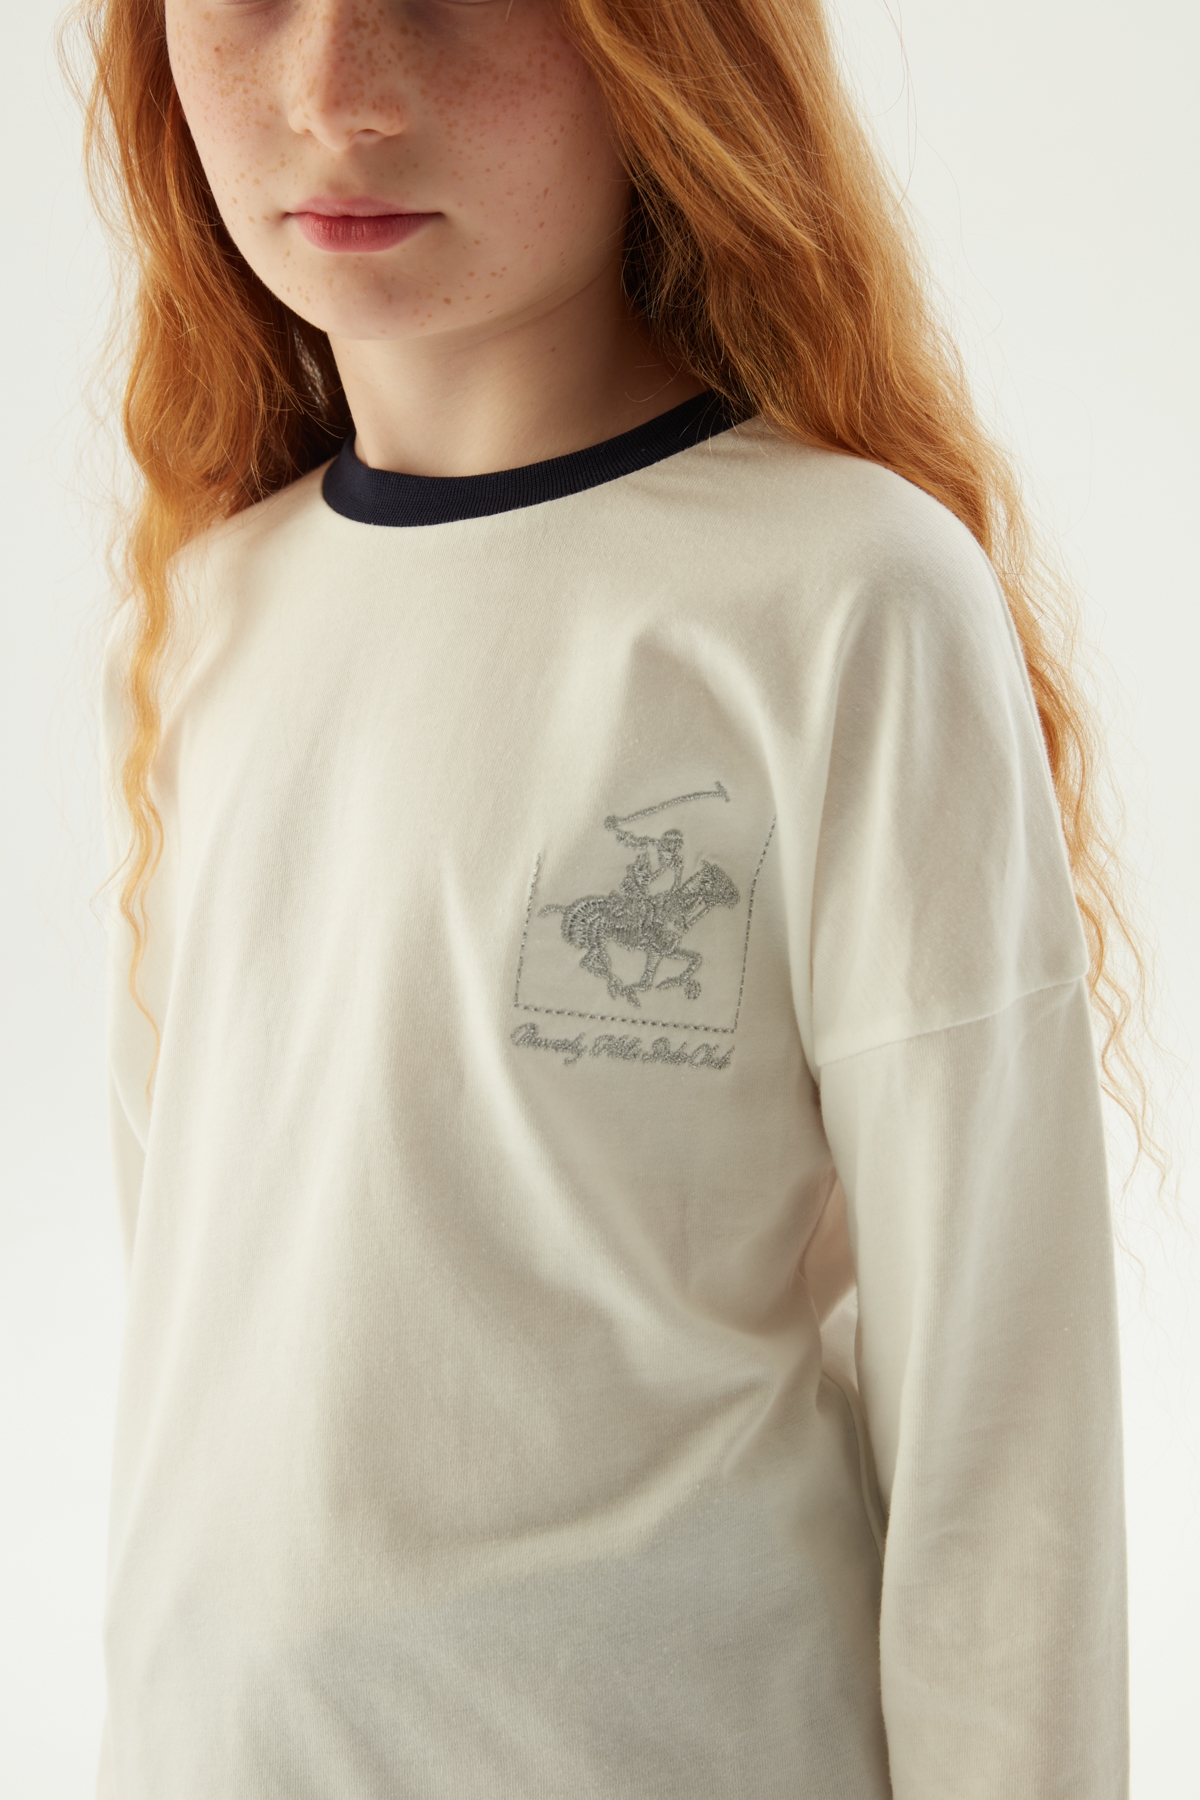 Kız Çocuk Ekru T-Shirt